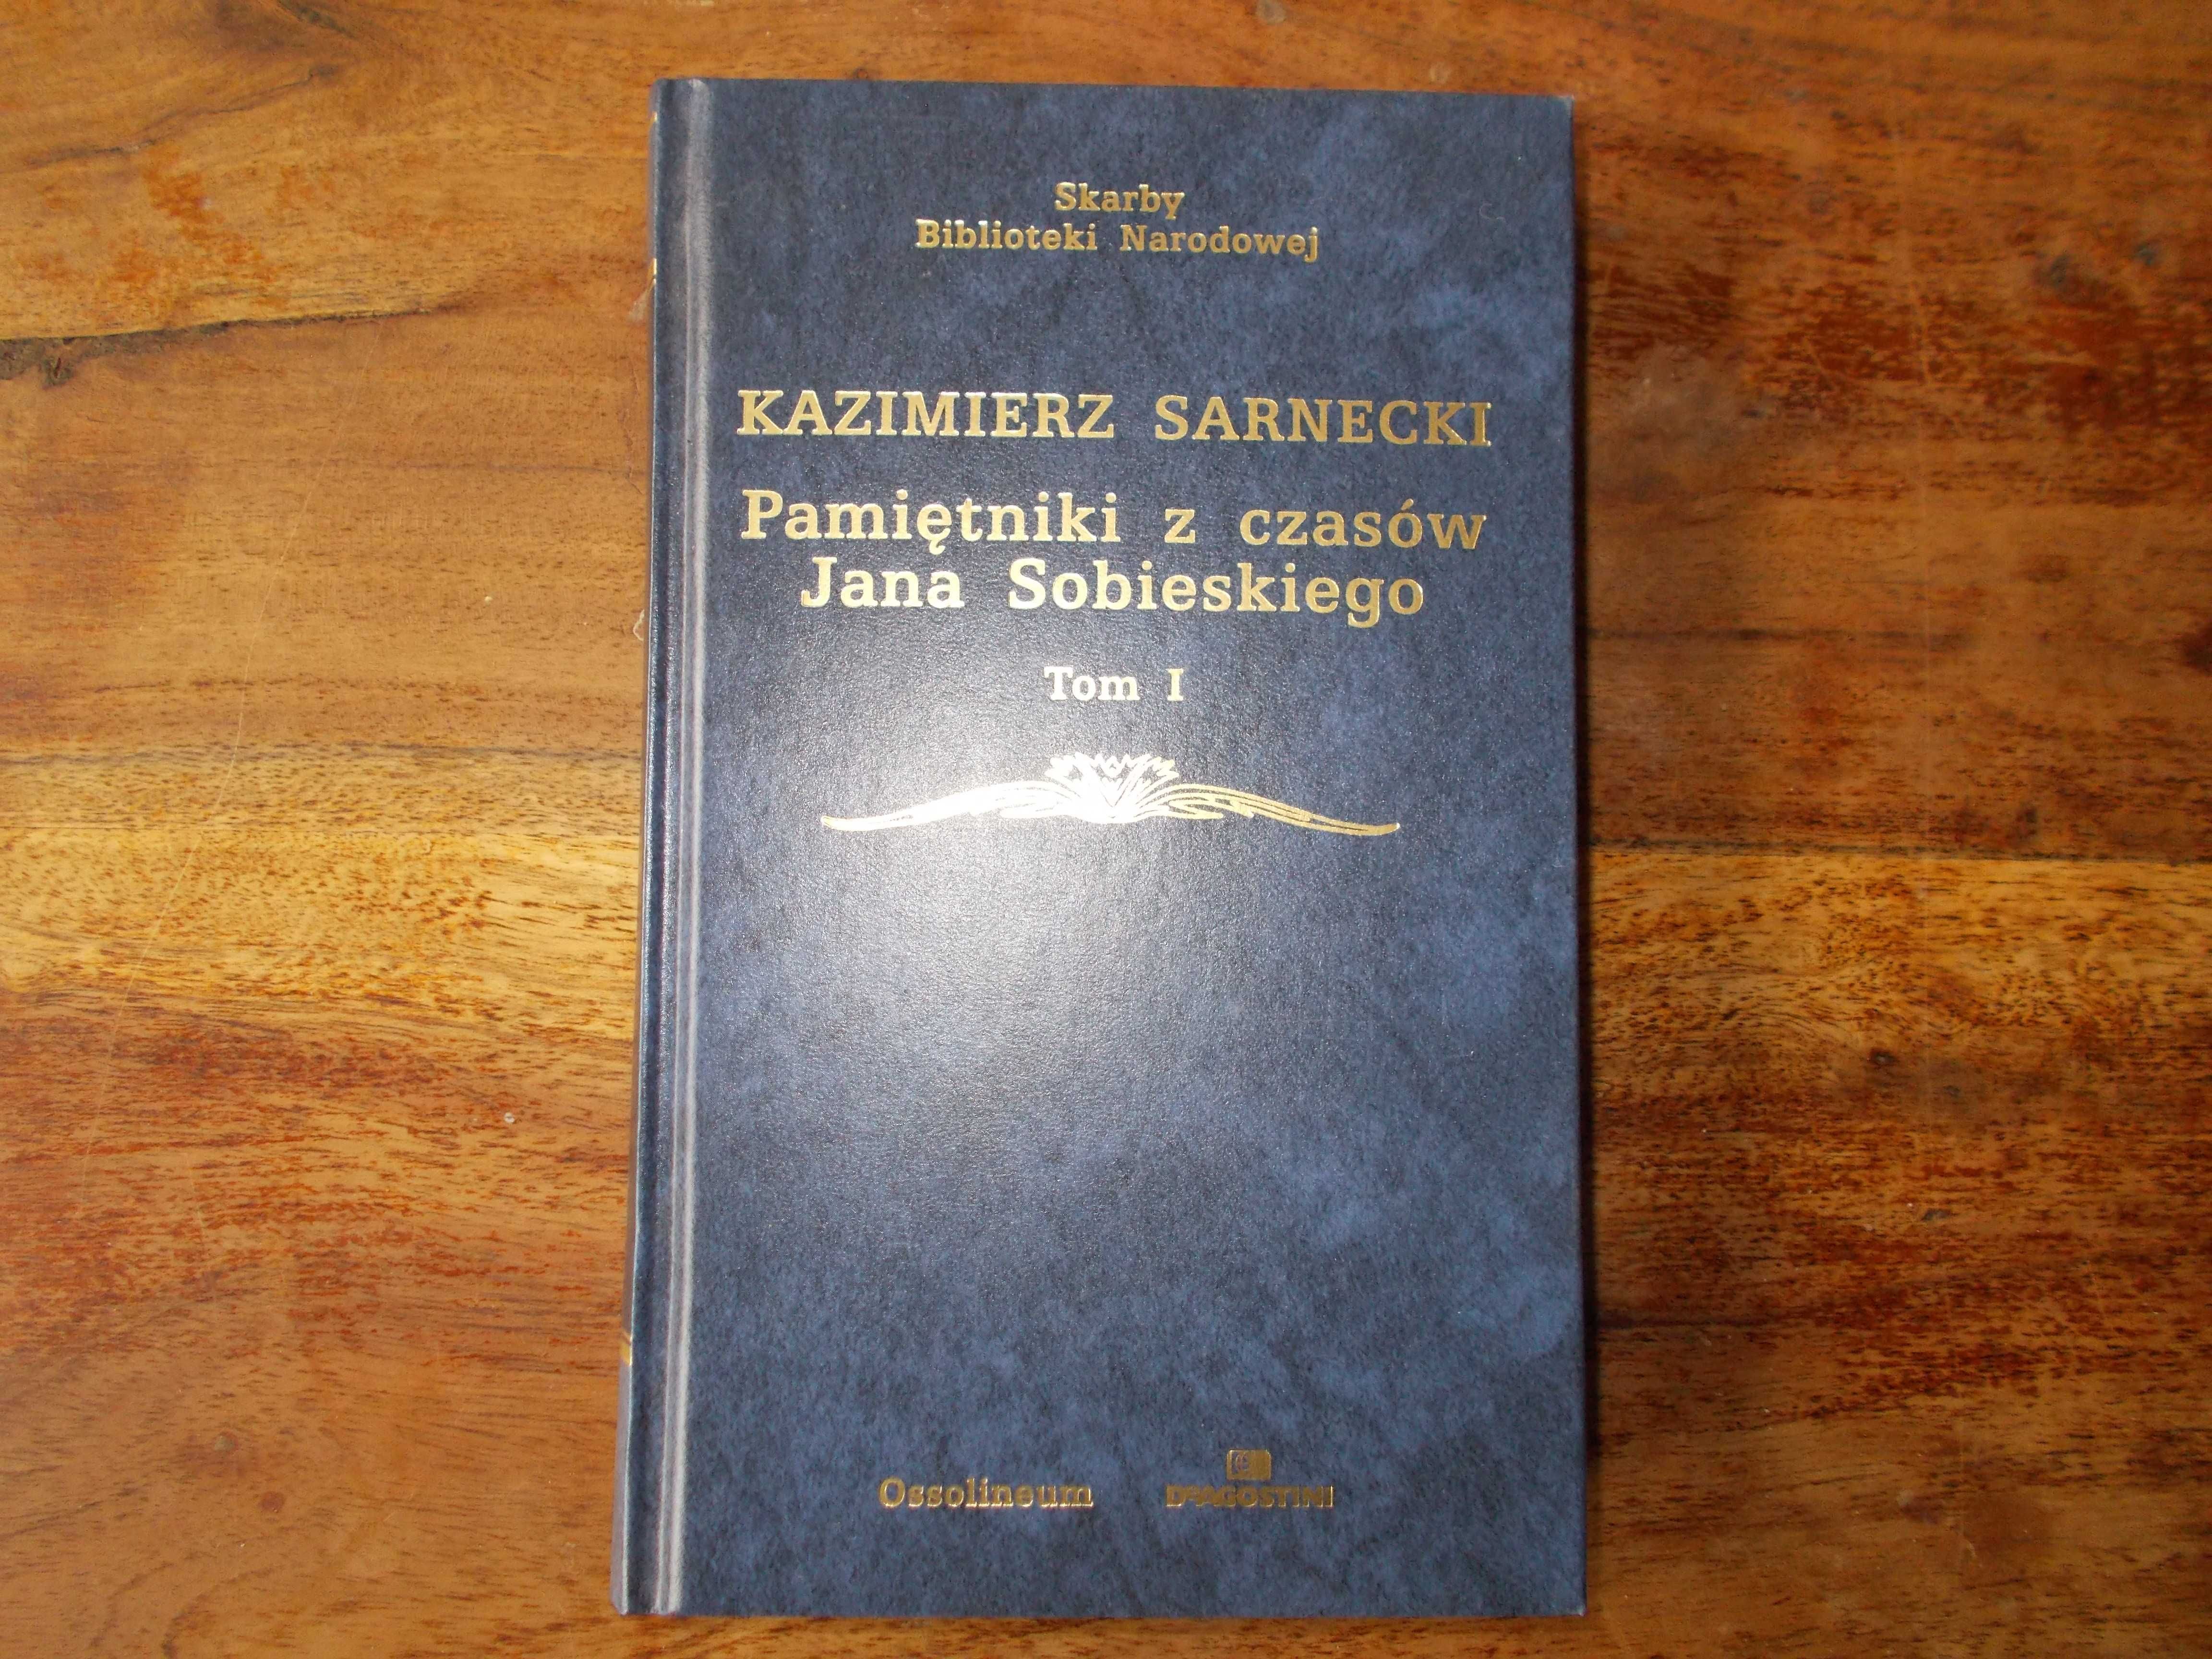 Kazimierz Sarnecki: Pamiętniki z czasów Jana Sobieskiego tom I